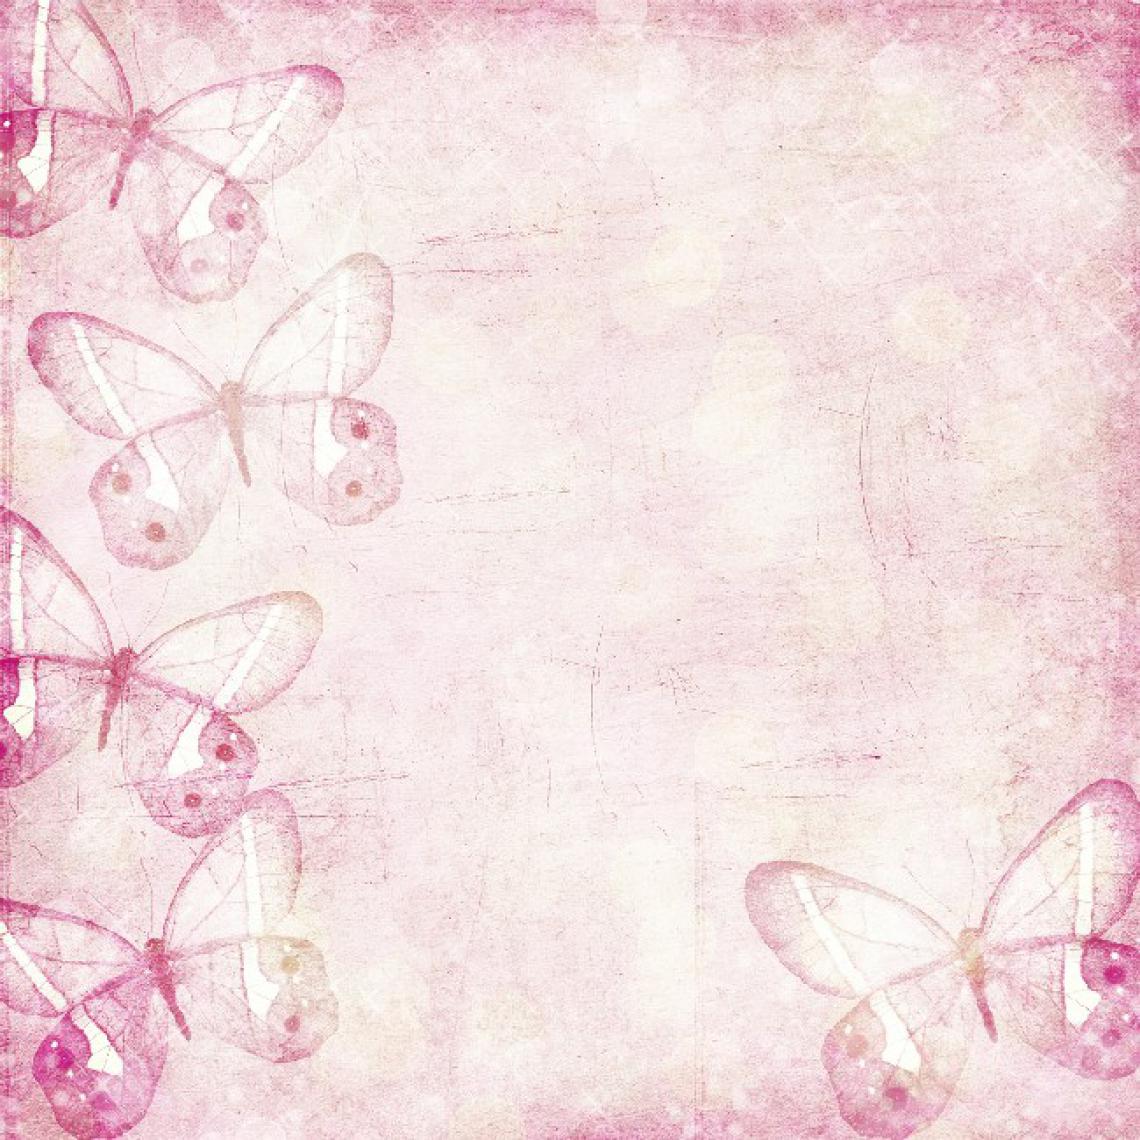 Homemania - HOMEMANIA Tapis Imprimé Butterfly'S Dream - pour les enfants - Décoration de Maison - antidérapants - Pour Salon, séjour, chambre à coucher - Multicolore en Polyester, Coton, 80 x 150 cm - Tapis